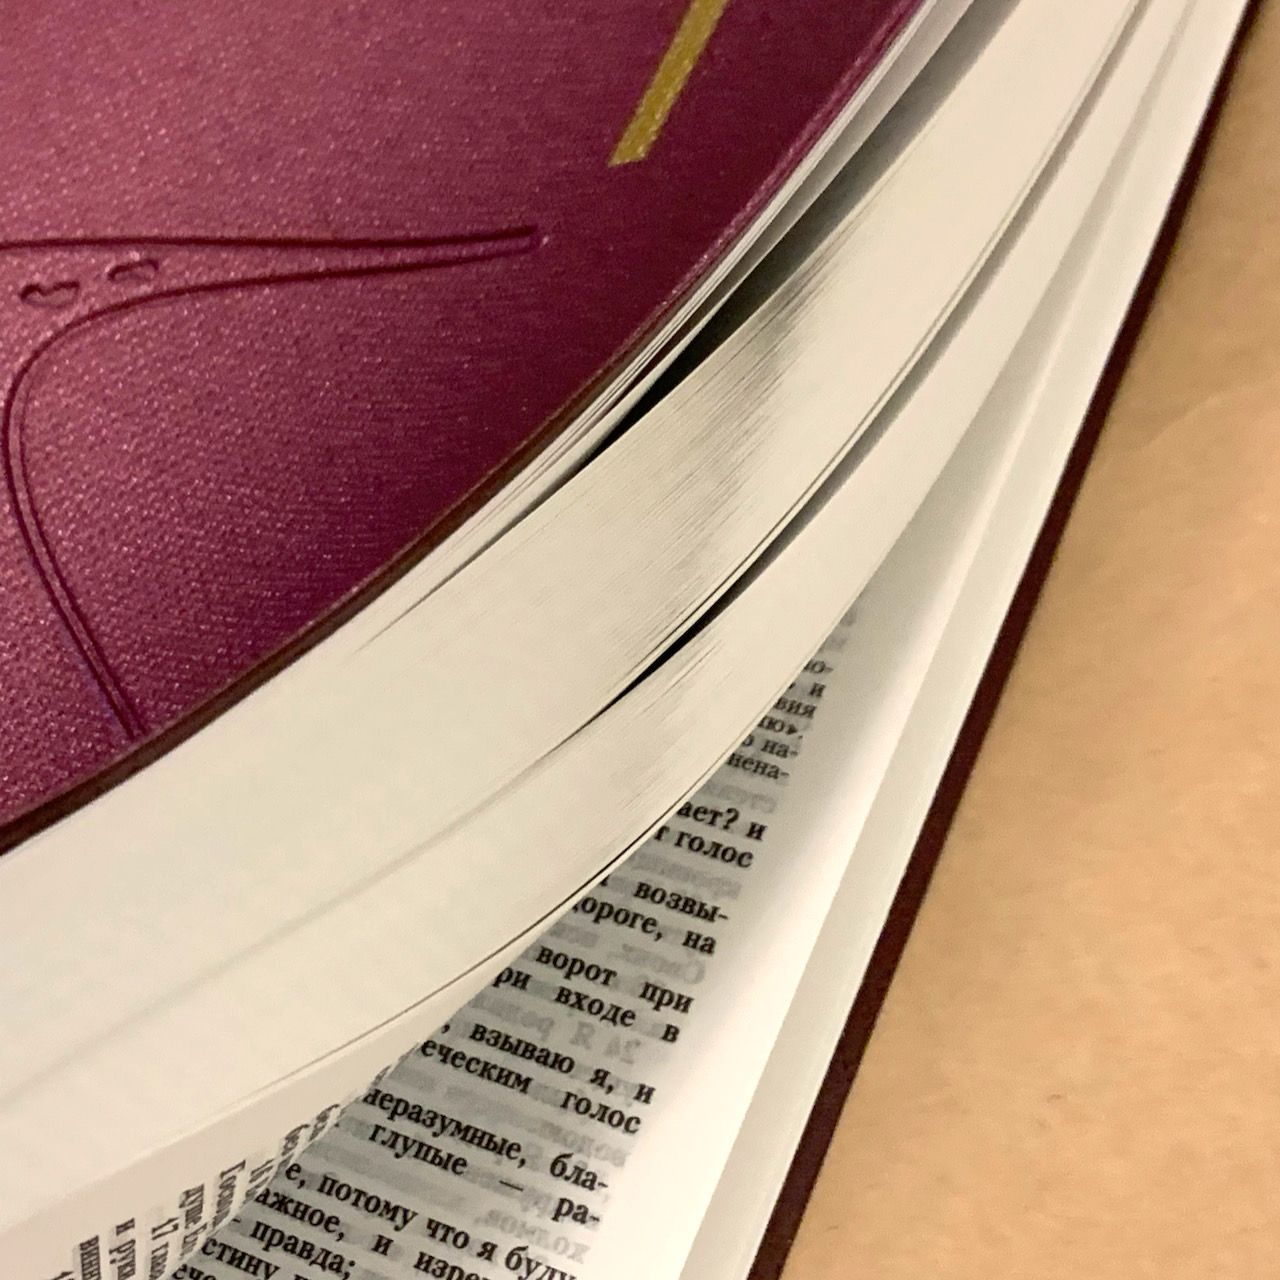 Библия 055 код C2 7115 переплет из искусственной кожи, цвет фиолетовый под ткань, дизайн "дорога ко Кресту", надпись "Библия" с торца, средний формат, 140*213 мм, параллельные места по центру страницы, крупный шрифт